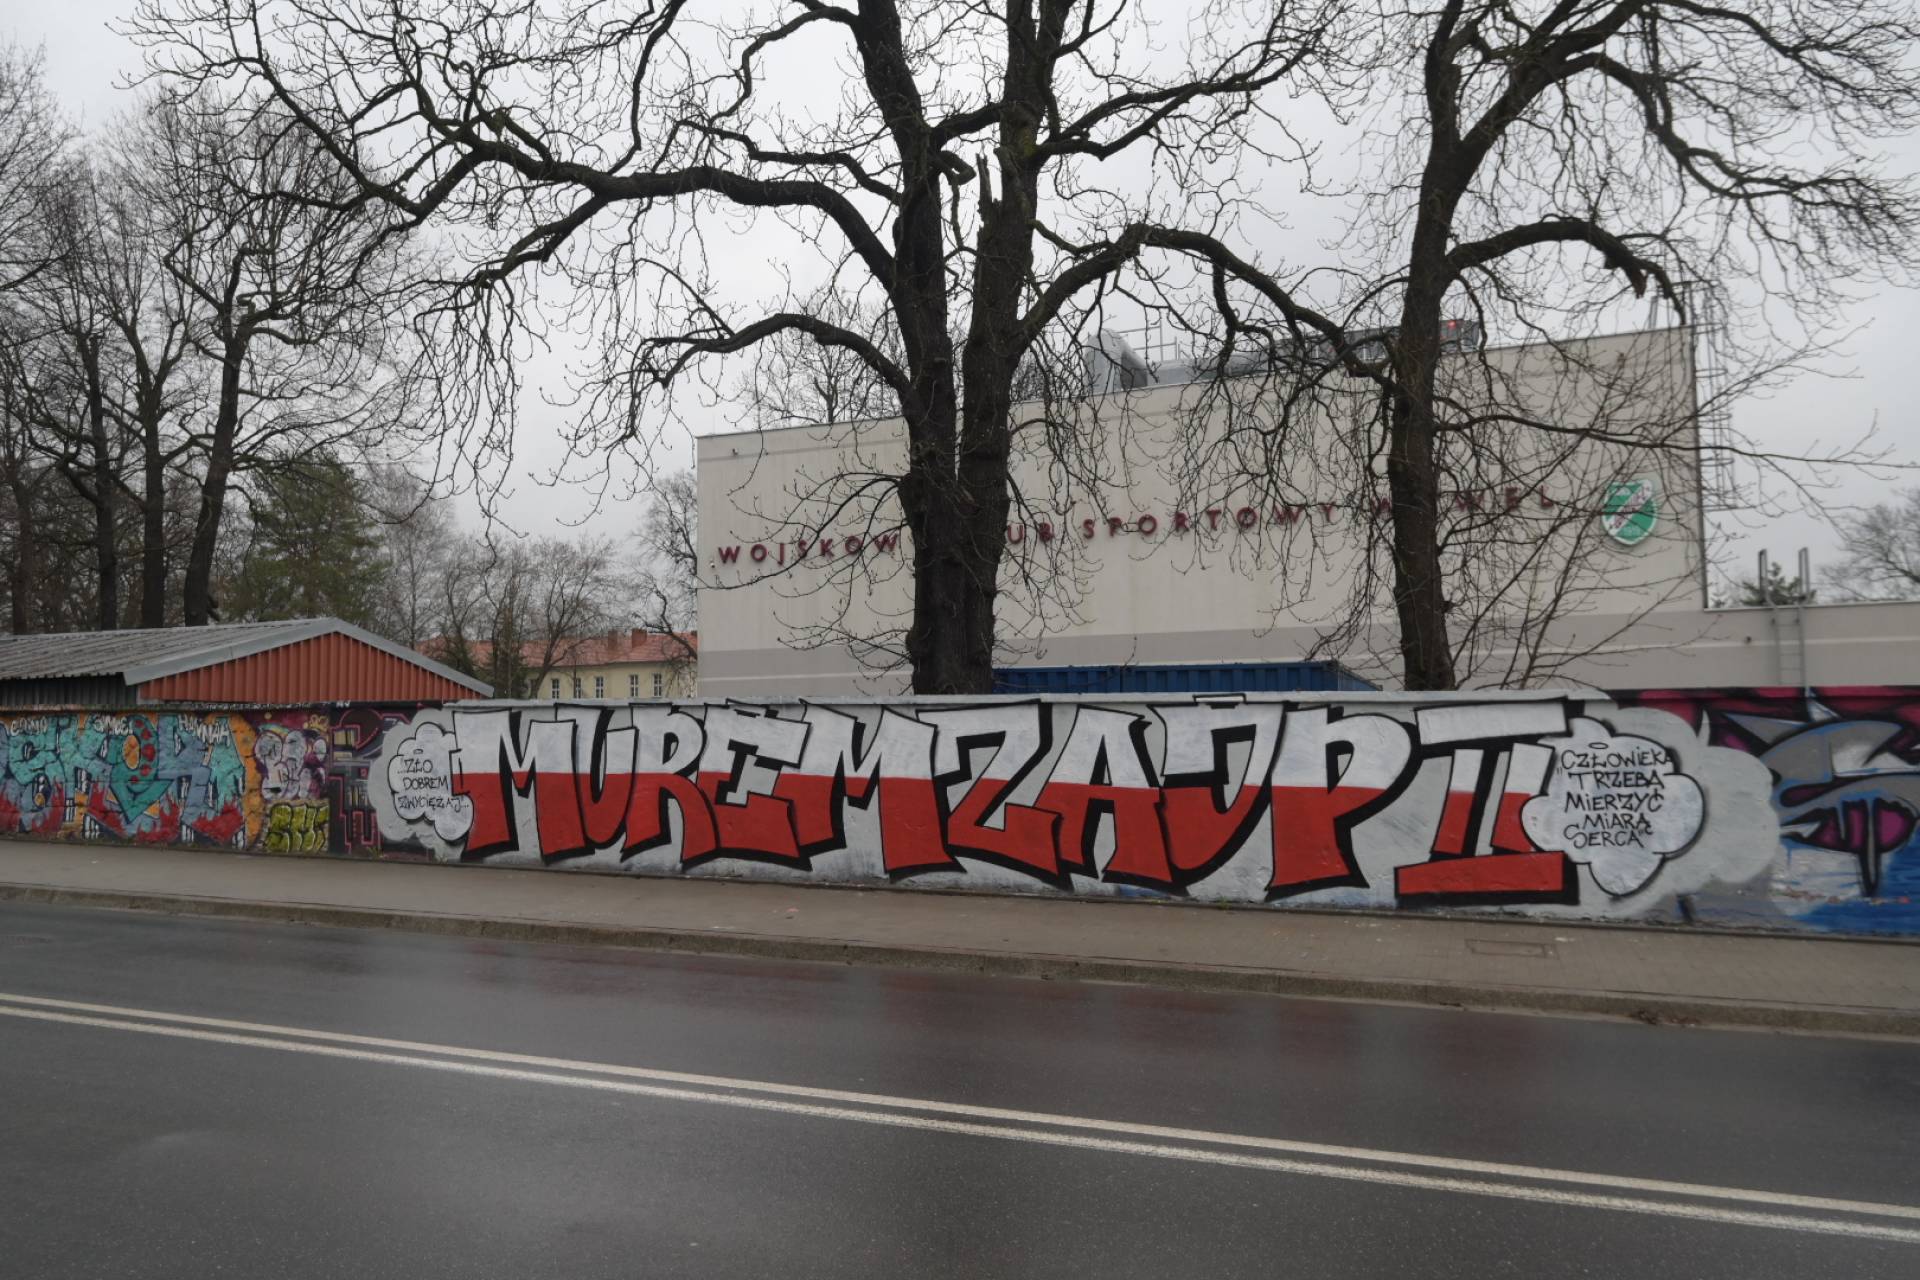 Zmalowali mural w obronie Jana Pawła II: "Murem za JP II"